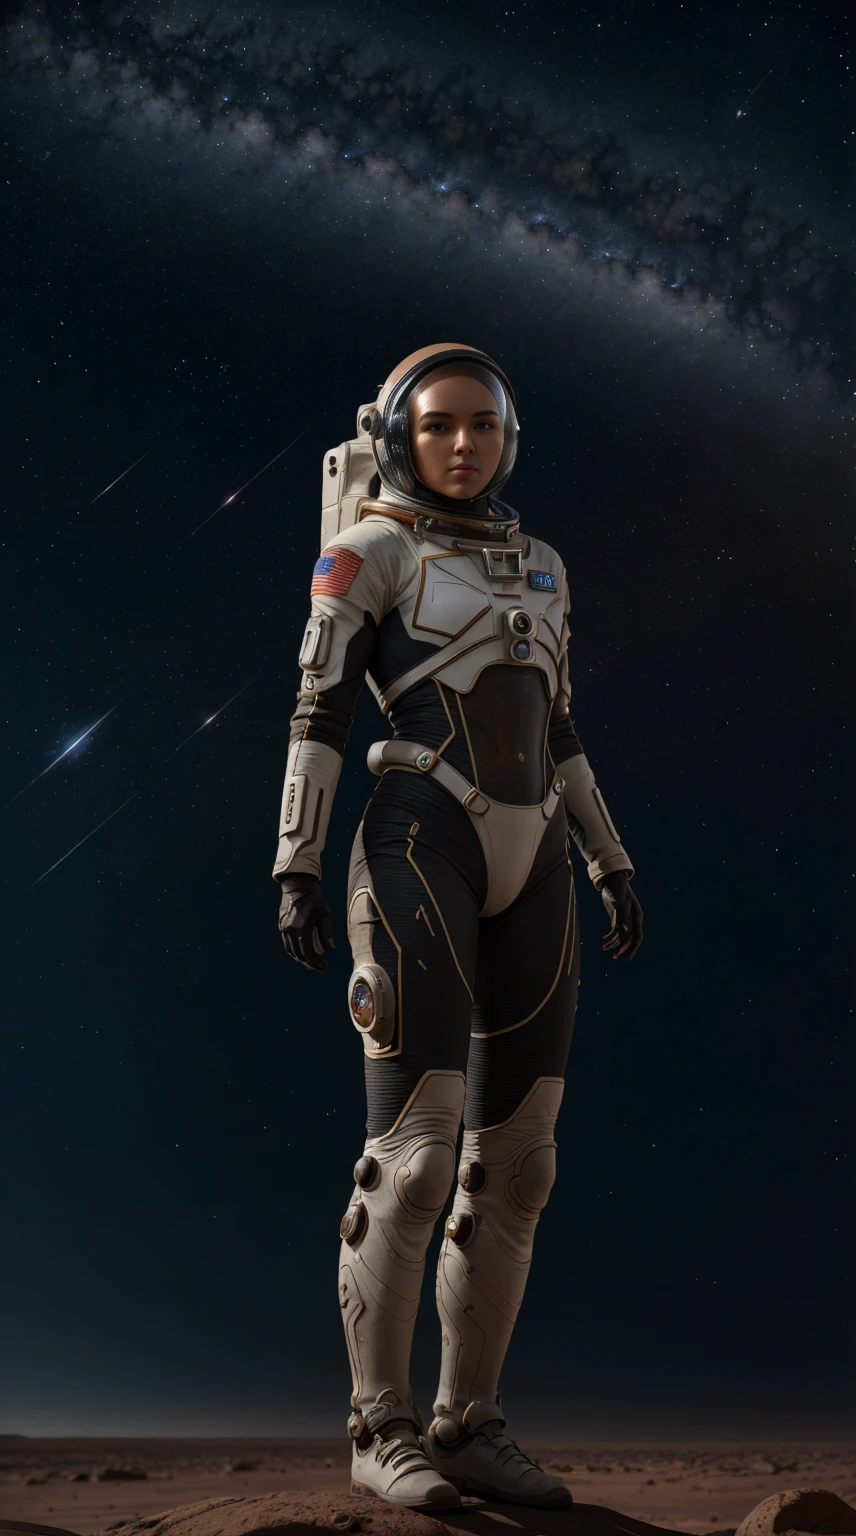 امرأة ترتدي بدلة فضاء مستقبلية, خوذة رائد الفضاء, يقف على صخور المريخ, النجوم المتلألئة في السماء البعيدة, (أفضل جودة, 4K, 8 كيلو, دقة عالية, تحفة:1.2), مفصلة للغاية, حقيقي, photoحقيقي, photo-حقيقي:1.37, تقرير التنمية البشرية, فائق الوضوح, إضاءة الاستوديو, لوحة فائقة الدقة, التركيز الشديد, التقديم القائم على الجسد, وصف التفاصيل المدقع, احترافي, الوان براقة, خوخه, الخيال العلمي, مفهوم الفن